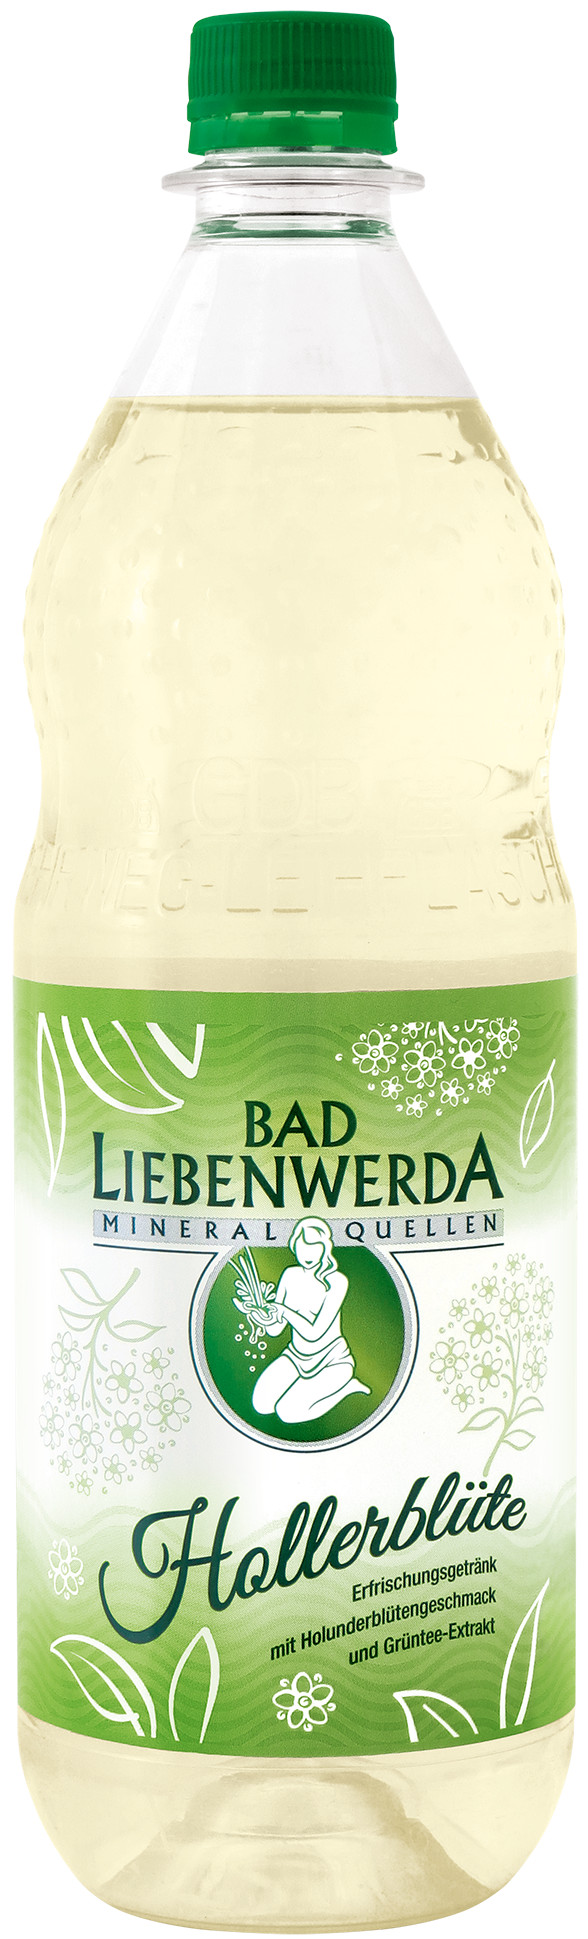 Bad Liebenwerda Hollerblüte Flasche 1 l PET Mehrweg